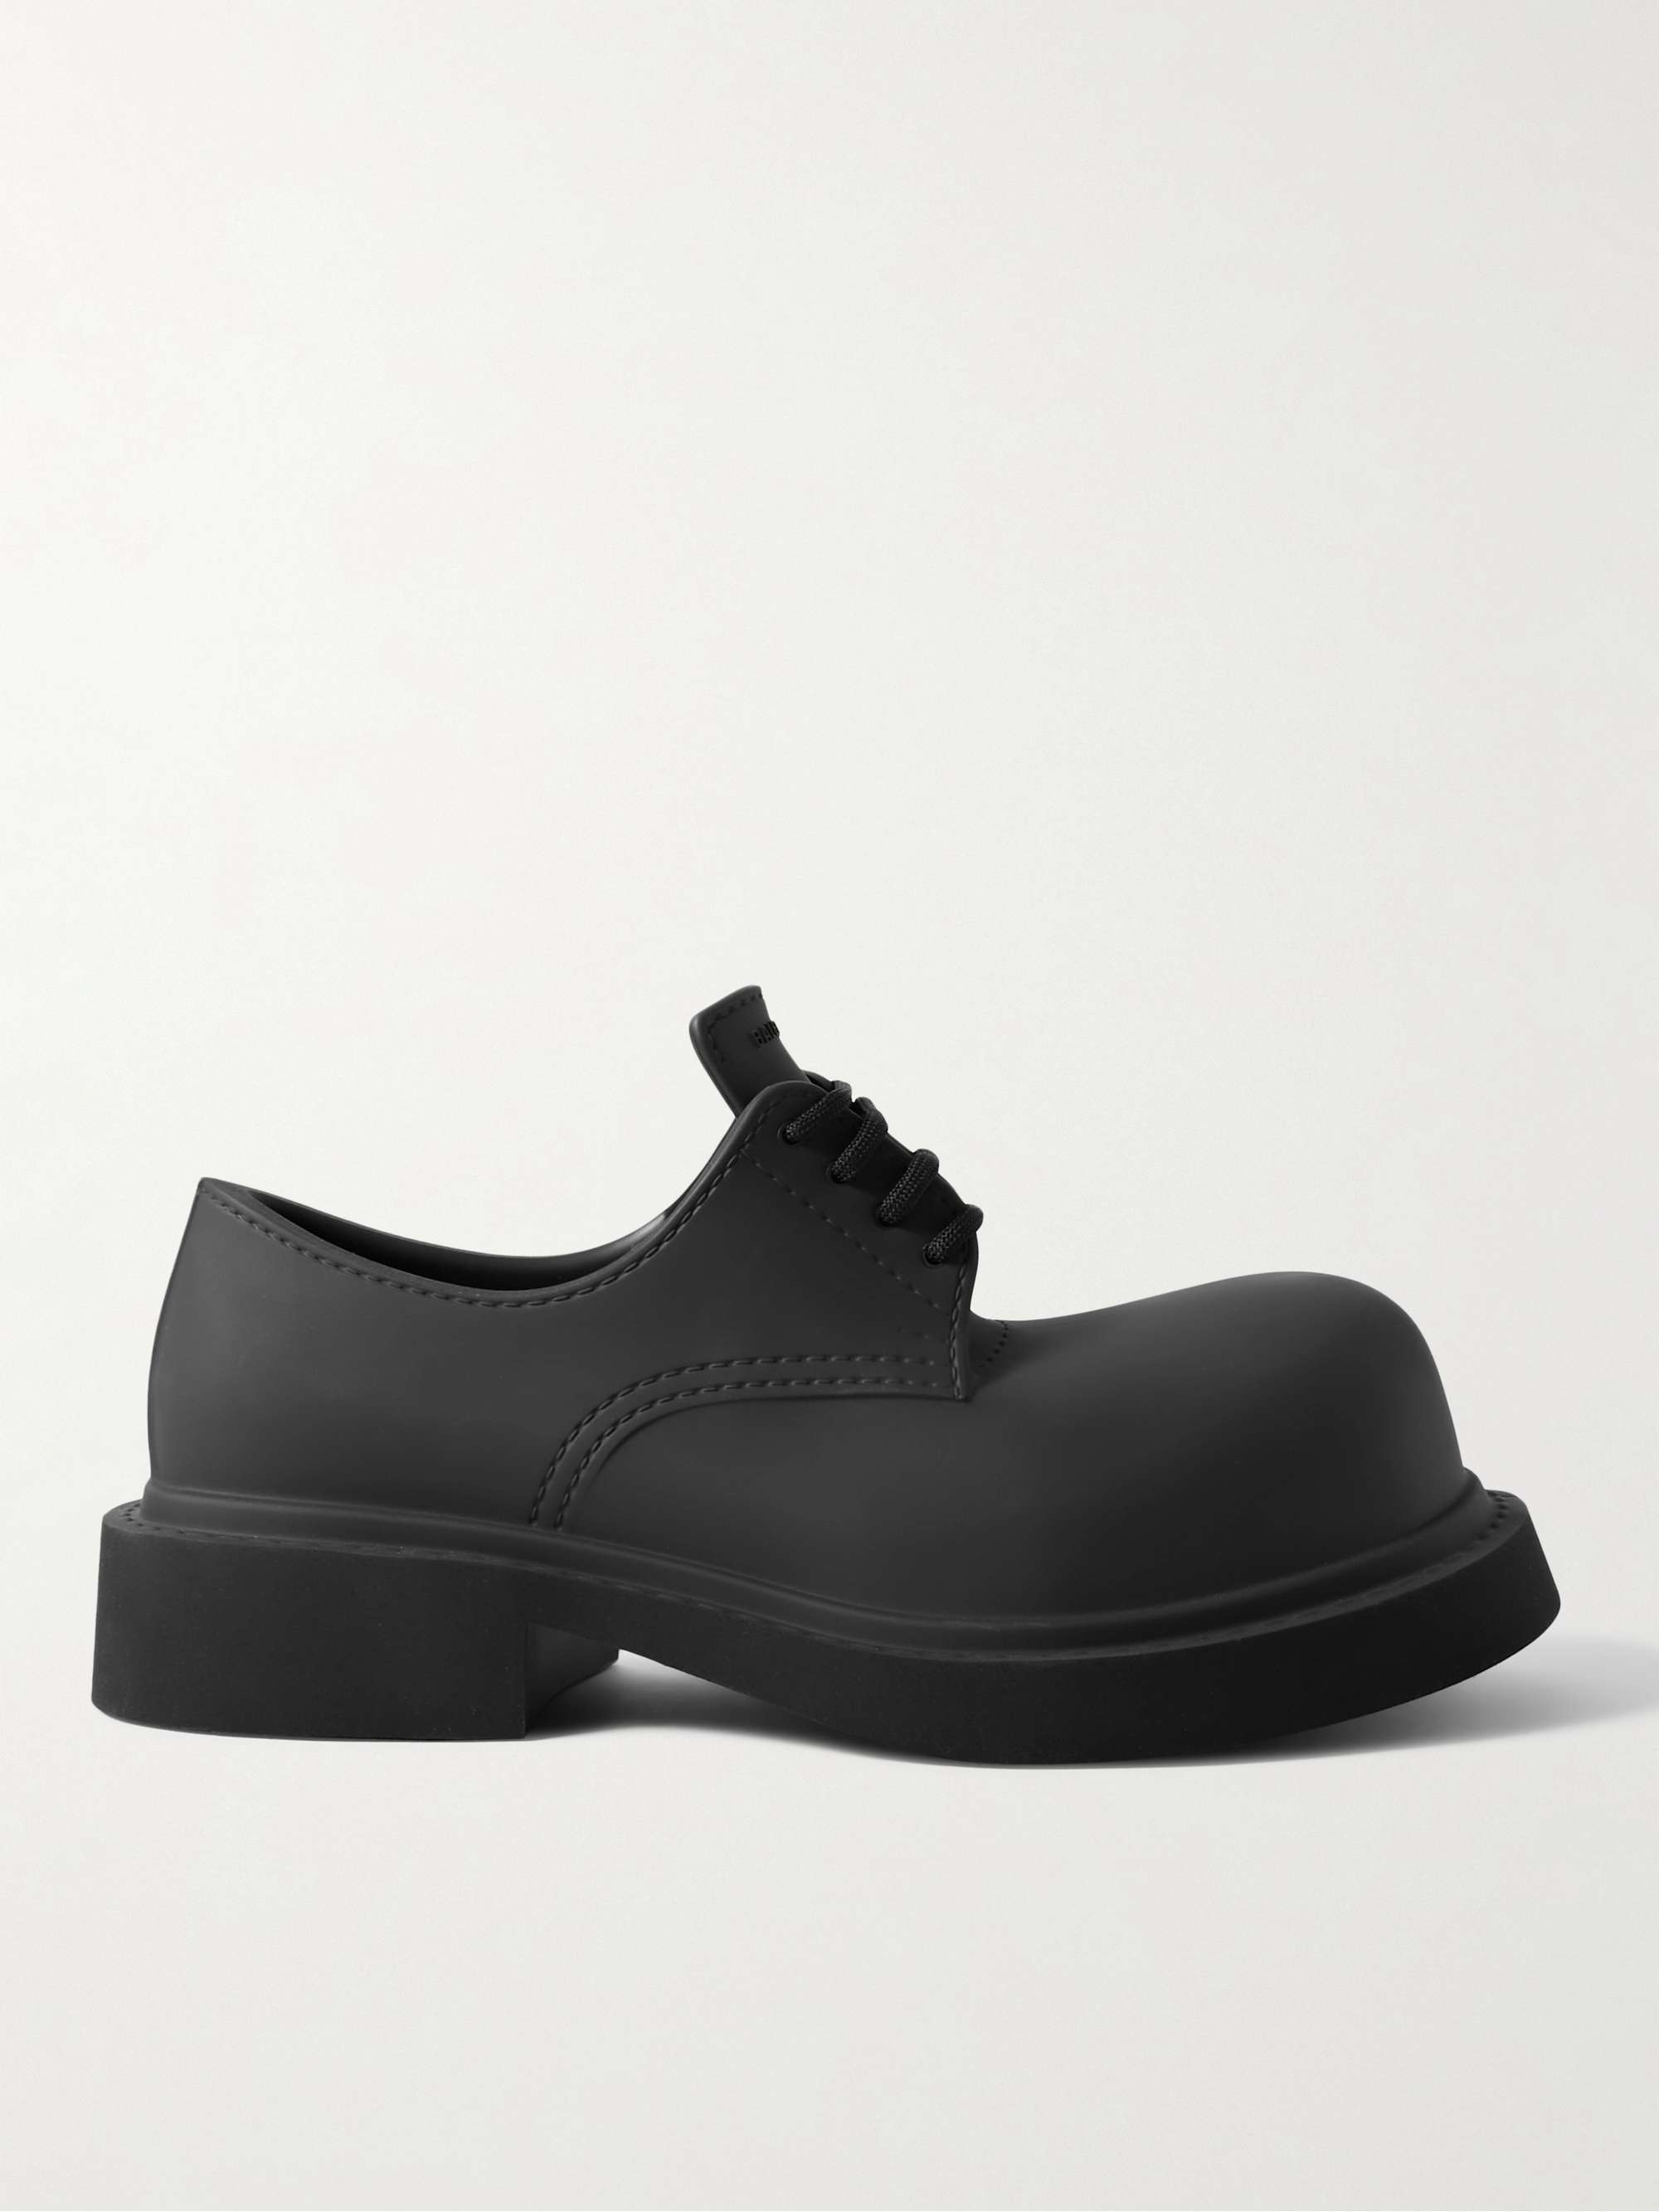 BALENCIAGA Rubber Derby Shoes for Men | MR PORTER